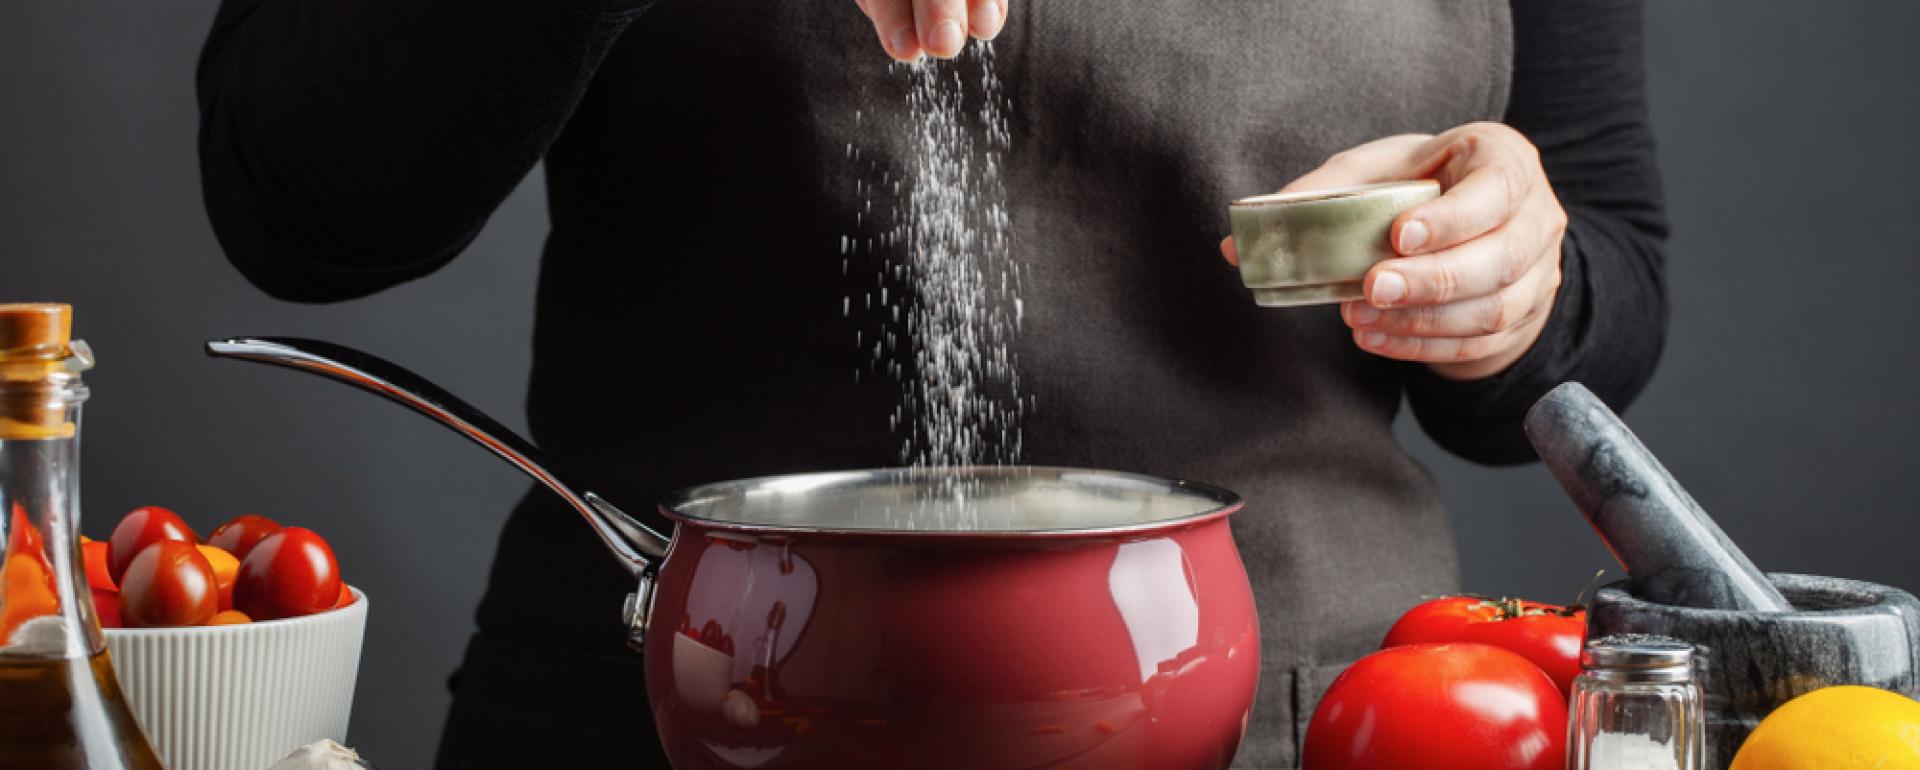 8 niezbędnych umiejętności potrzebnych do przygotowania pysznego dania